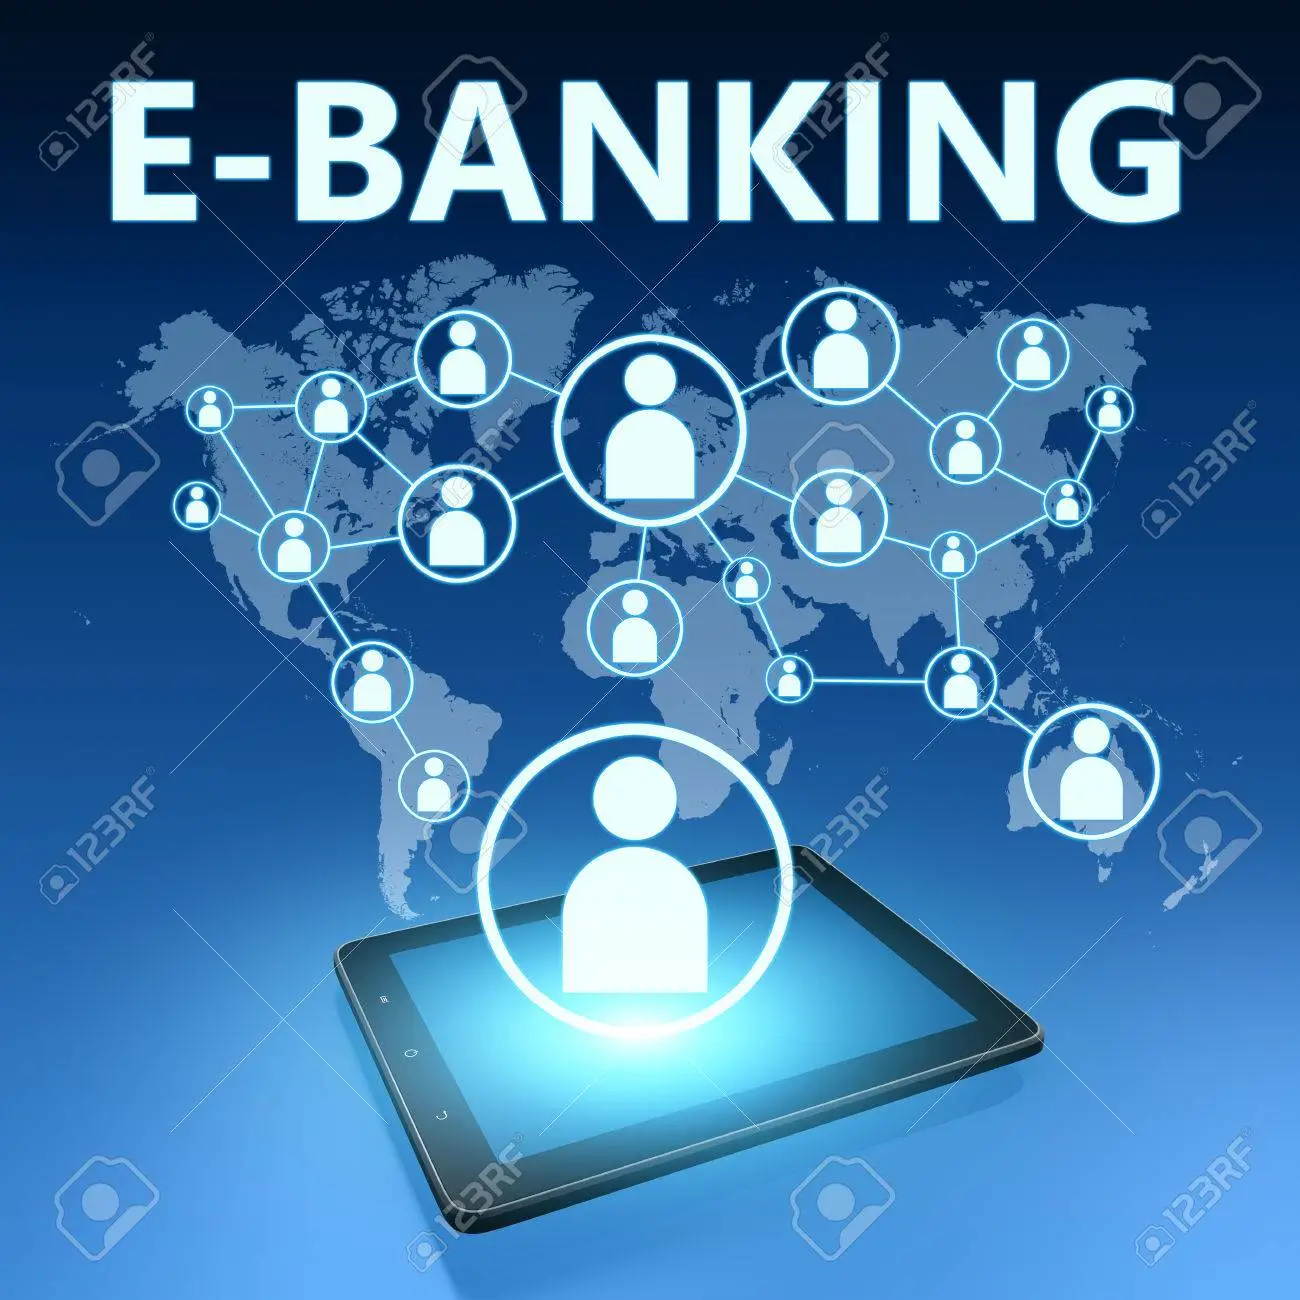 TRAINING ONLINE E-BANKING PERLINDUNGAN KONSUMEN